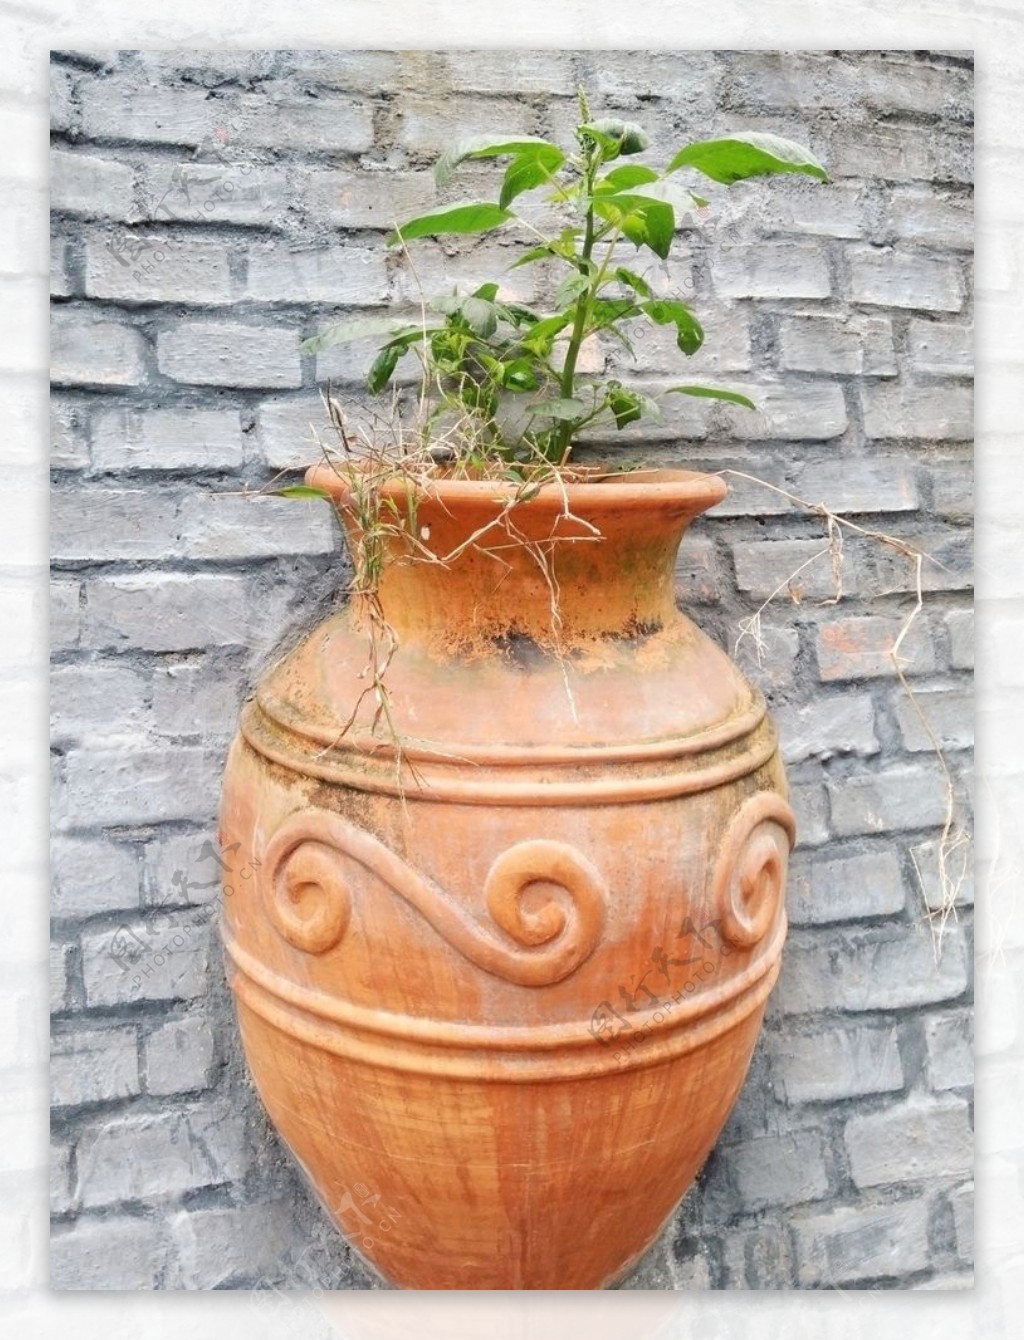 盆栽陶罐绿植园艺植物